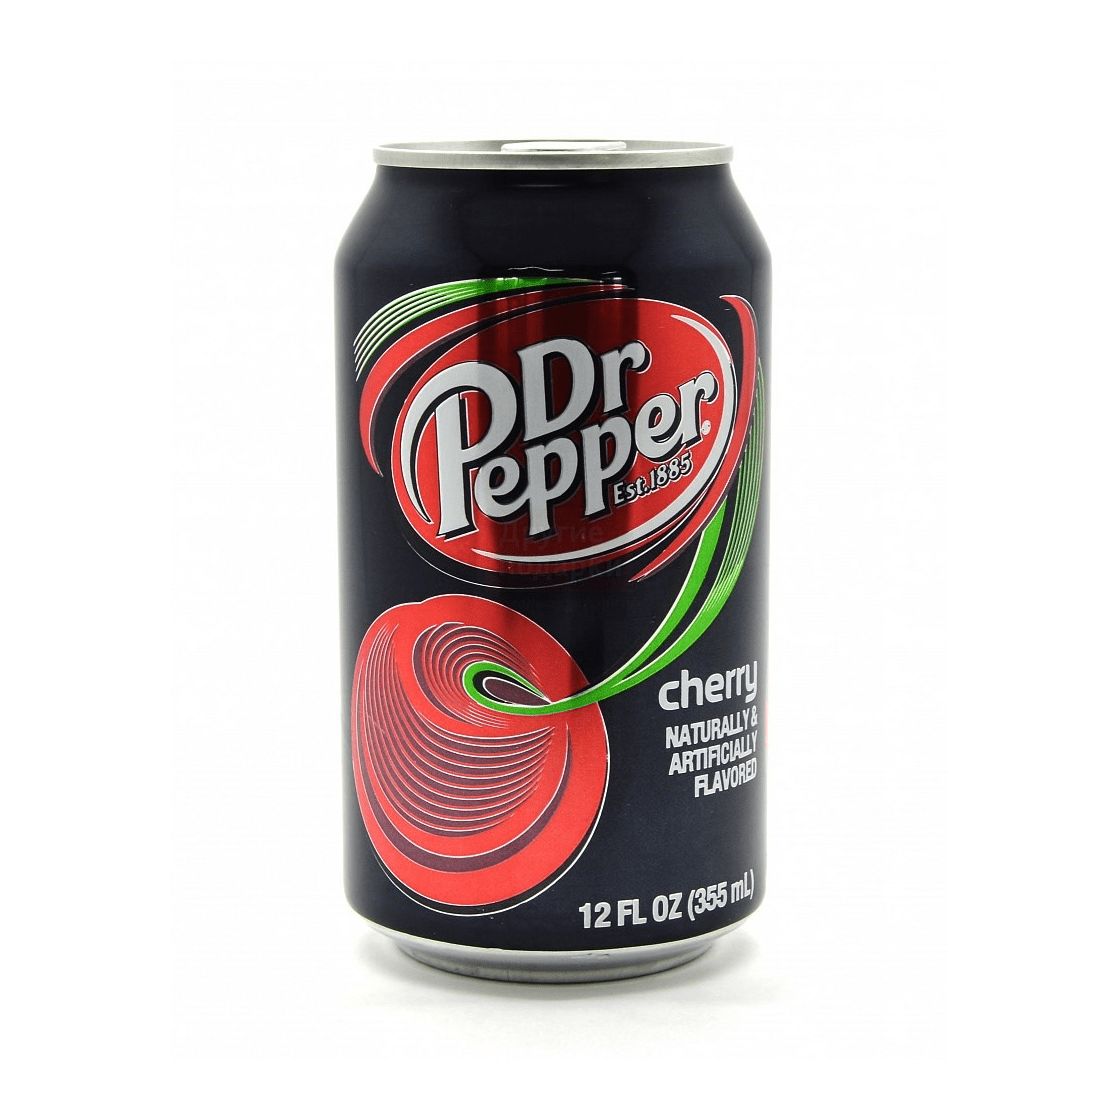 Pepper напиток. Др. Пеппер черри 330мл. Доктор Пеппер 0,33 ж/б. Газировка доктор Пеппер. Dr.Pepper Cherry 0.33л.